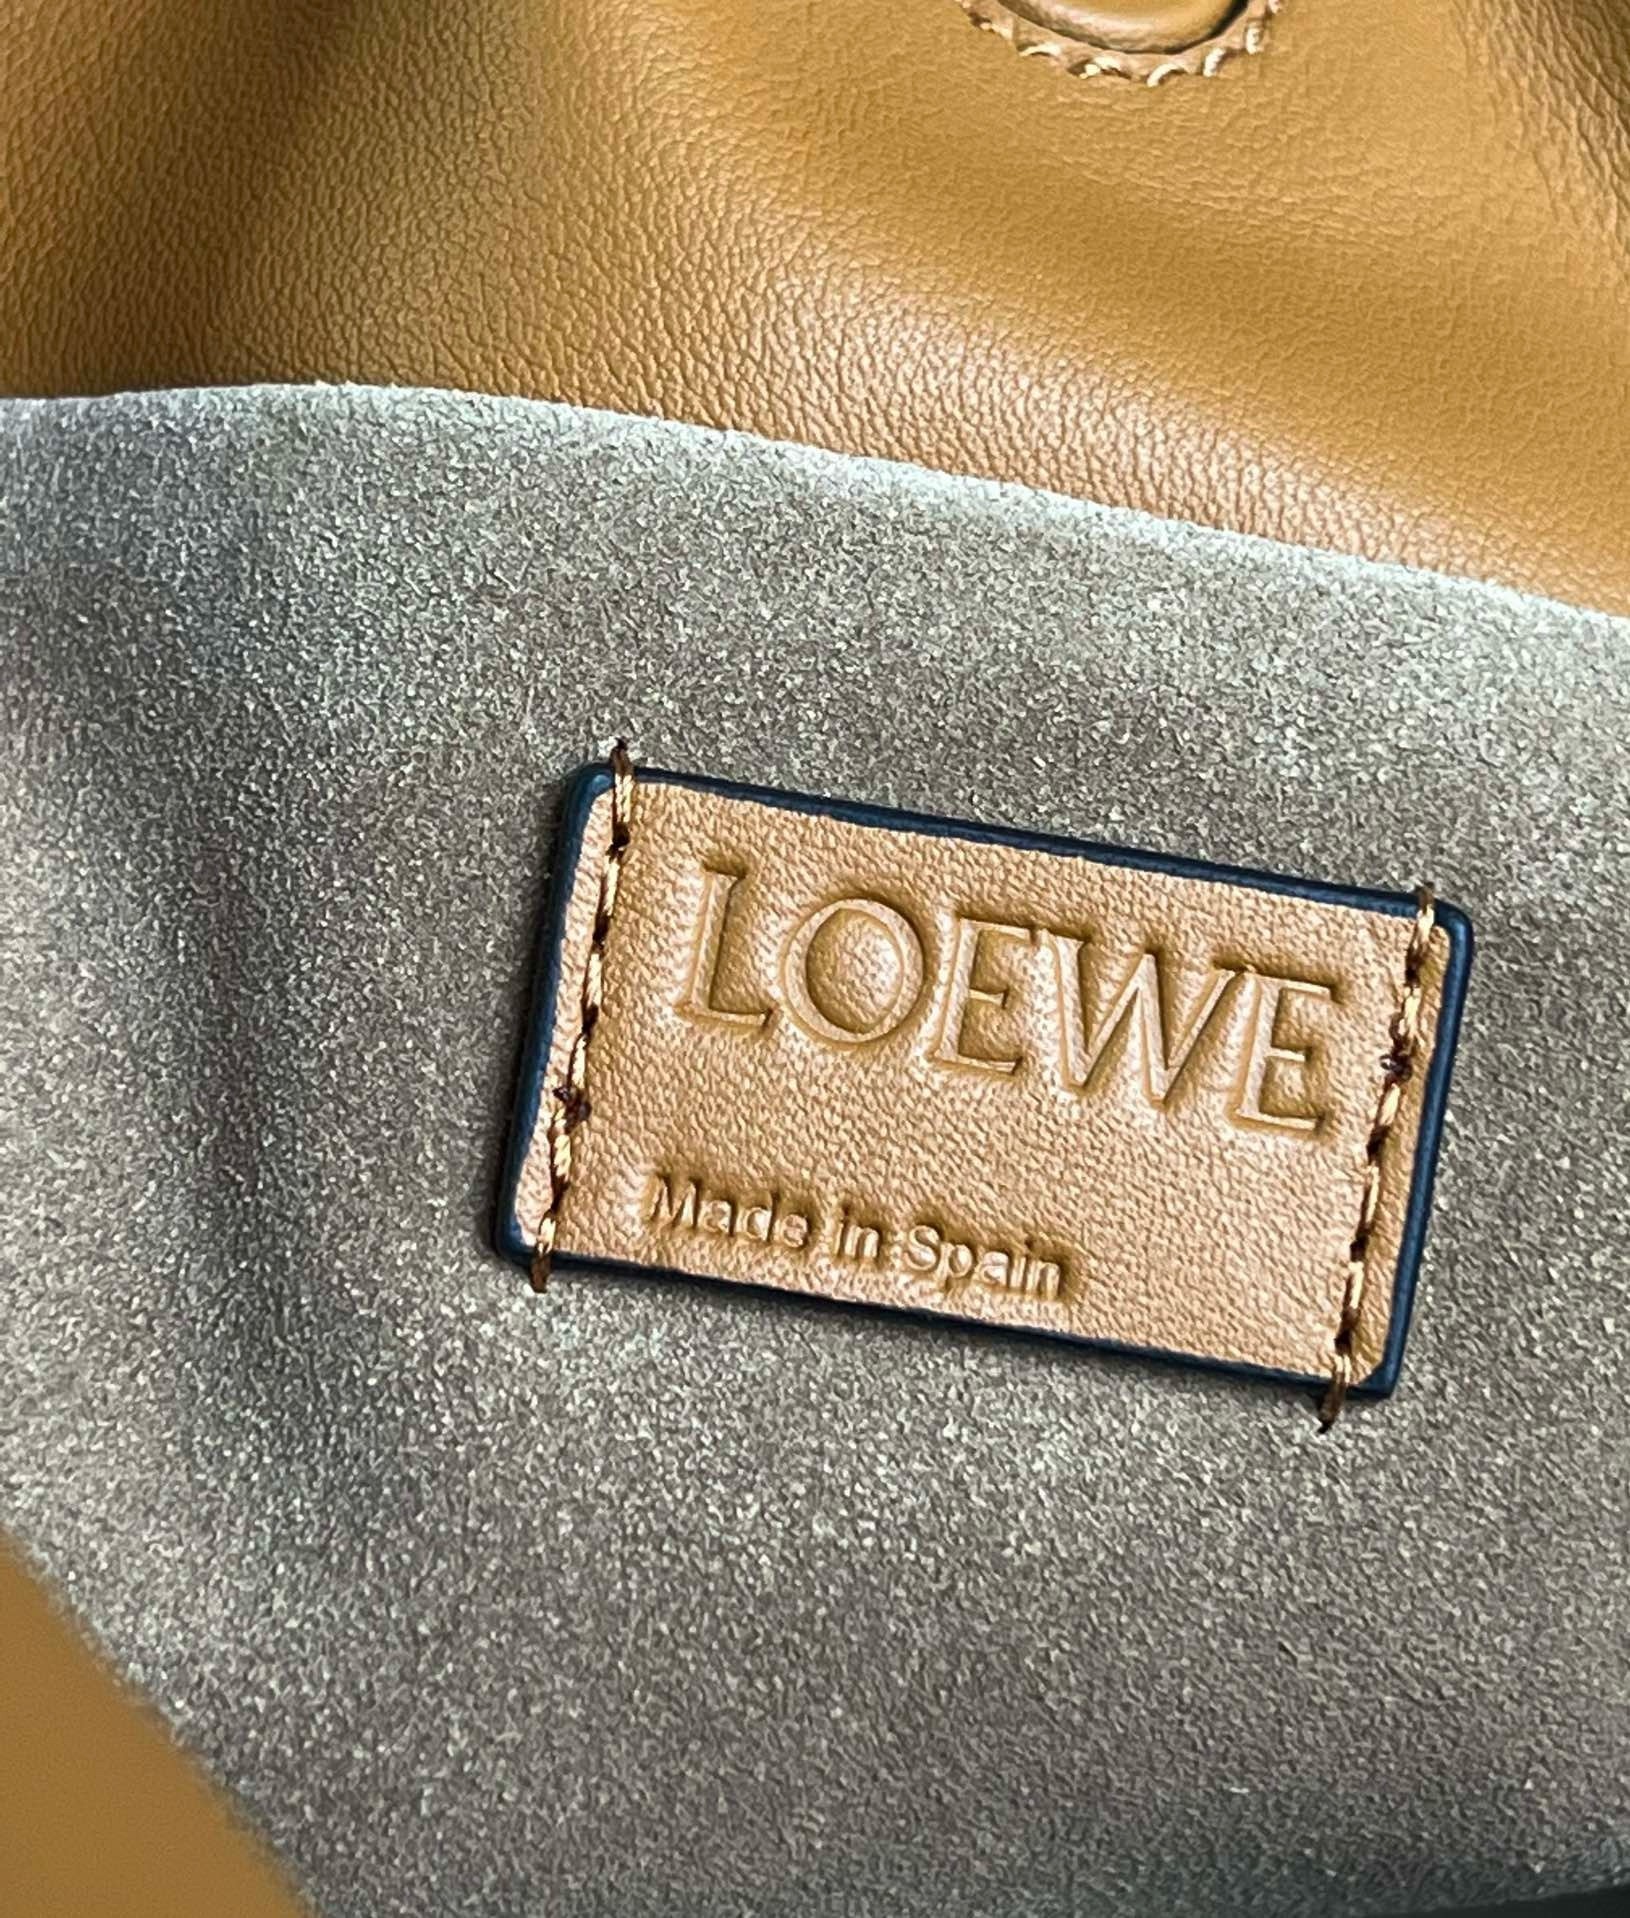 Loewe Flamenco Clutch Bag in Warm Desert Nappa Calfskin 965